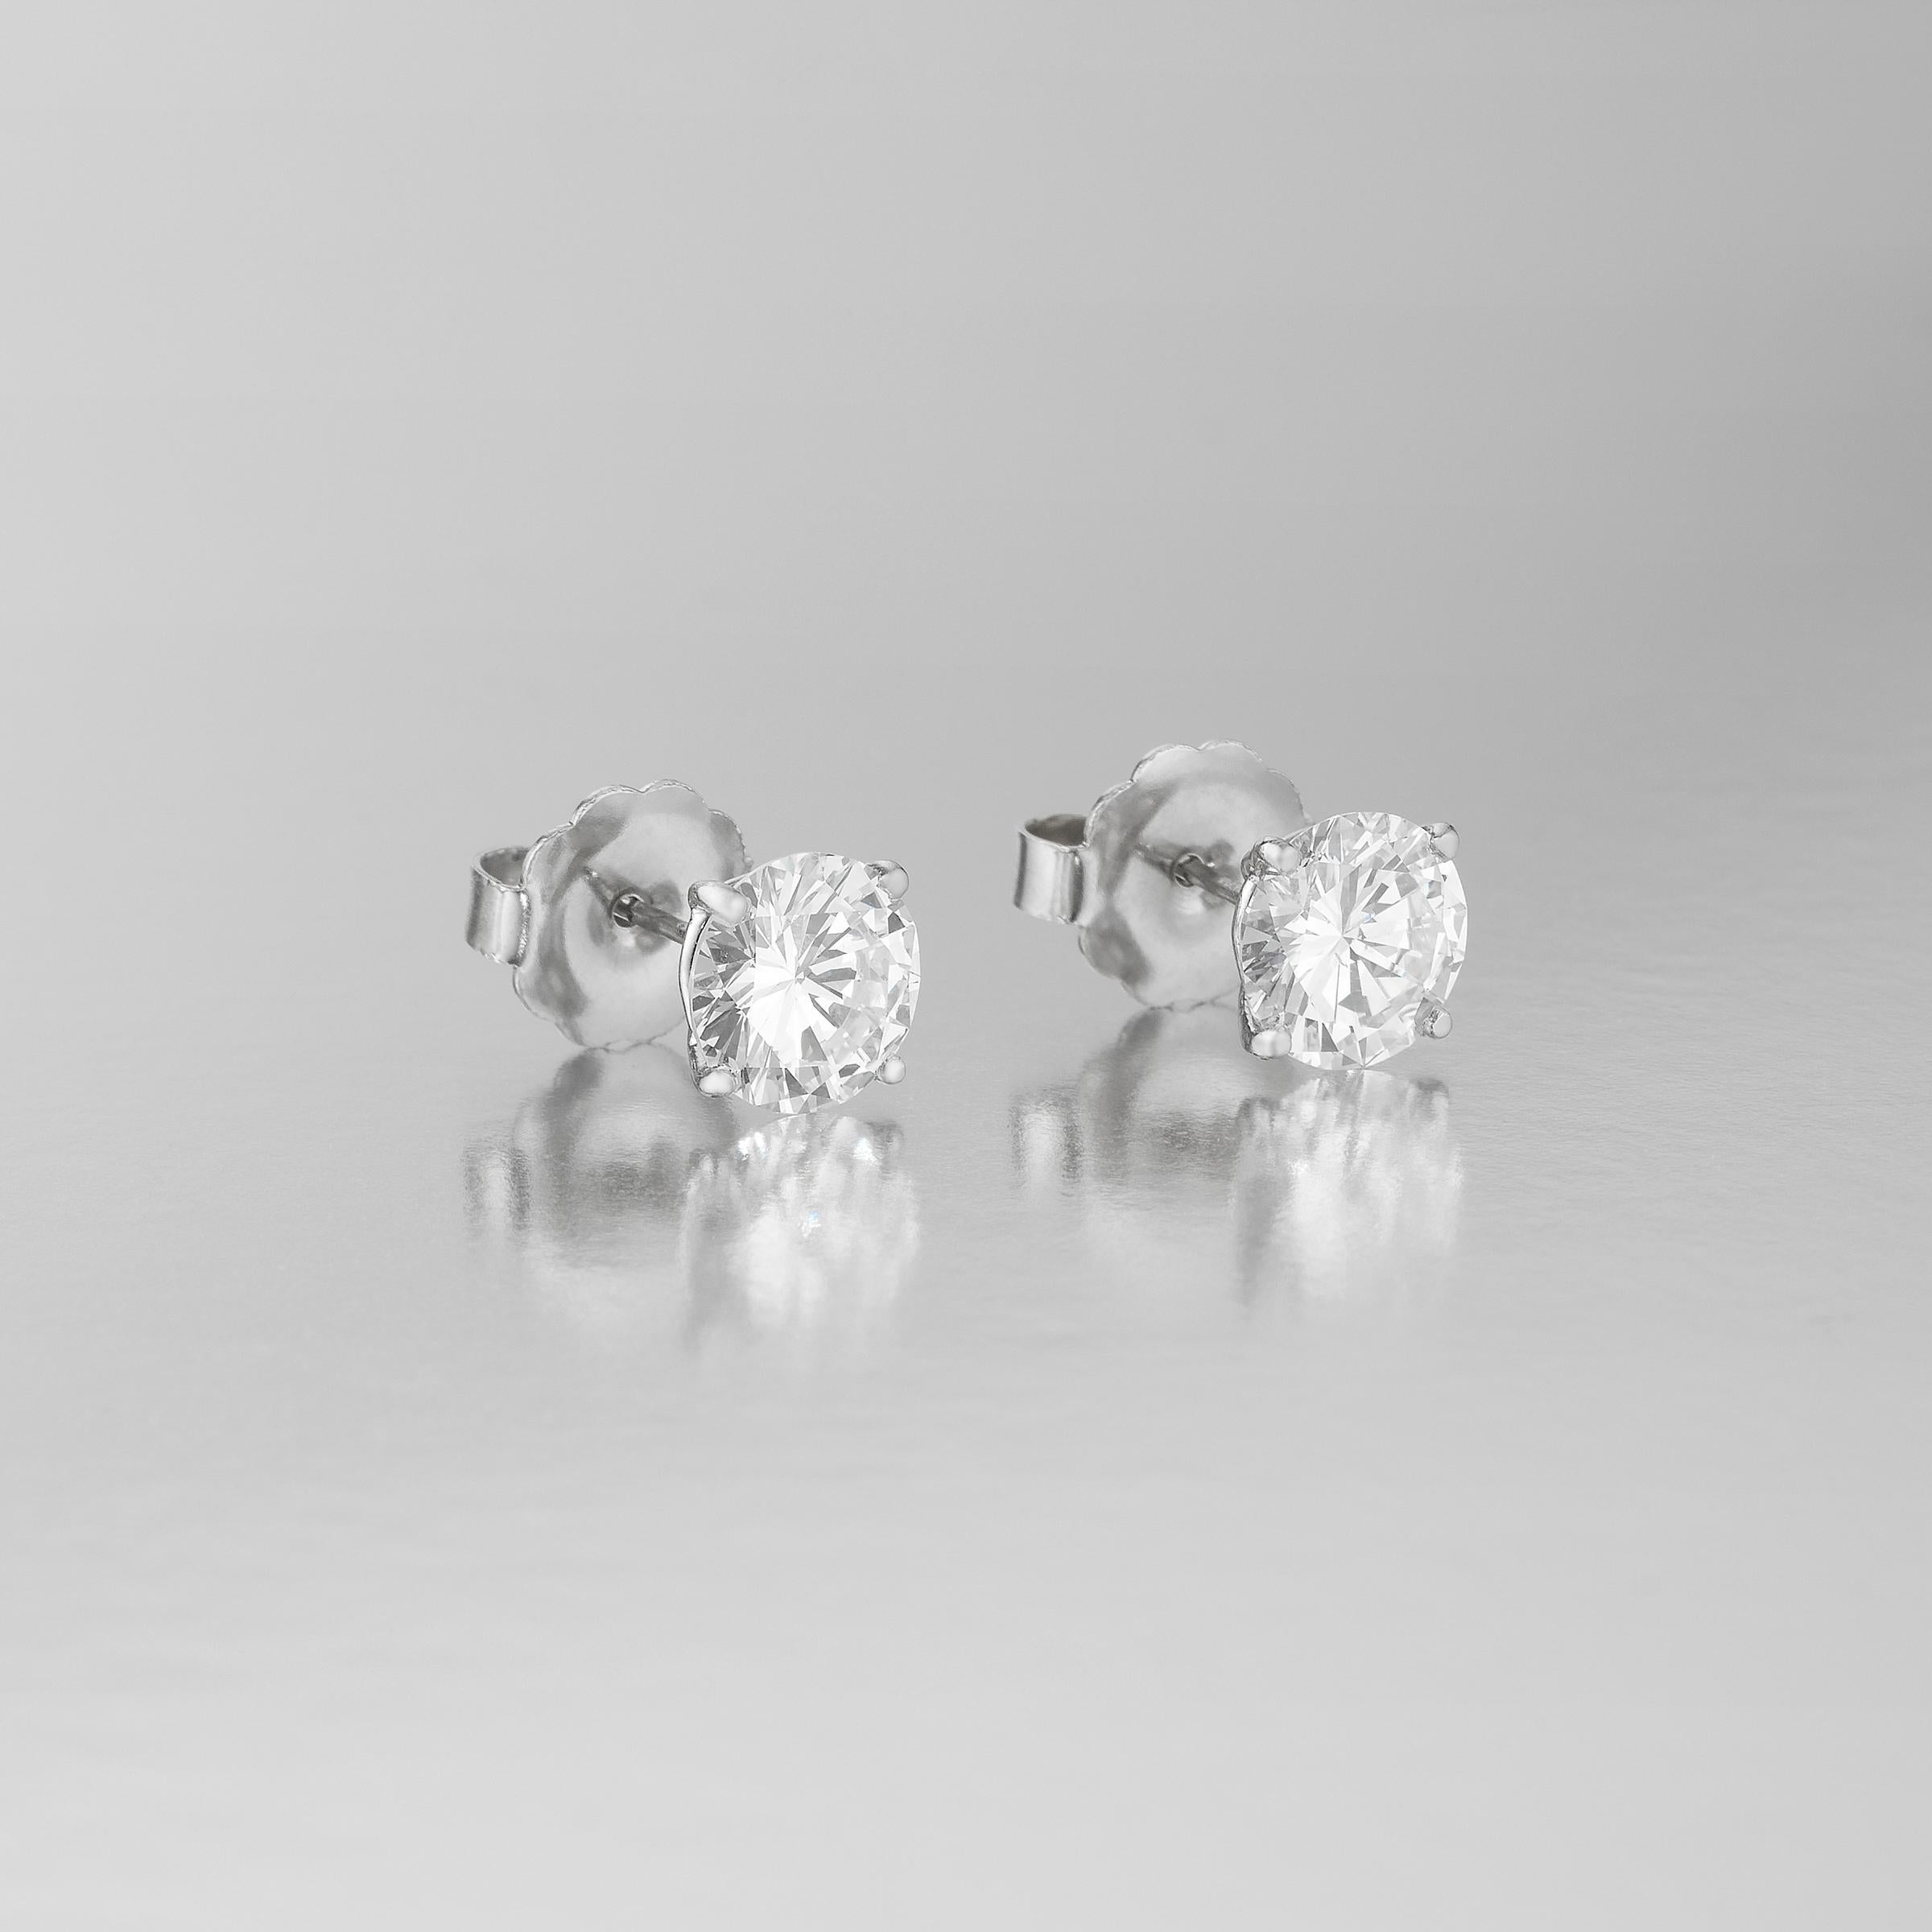 Exceptionnelles boucles d'oreilles solitaires en diamant mettant en valeur 2 spectaculaires diamants ronds de taille brillant certifiés GIA pesant 4,10 carats au total. Elles sont accompagnées de 2 certificats GIA montrant que le diamant rond